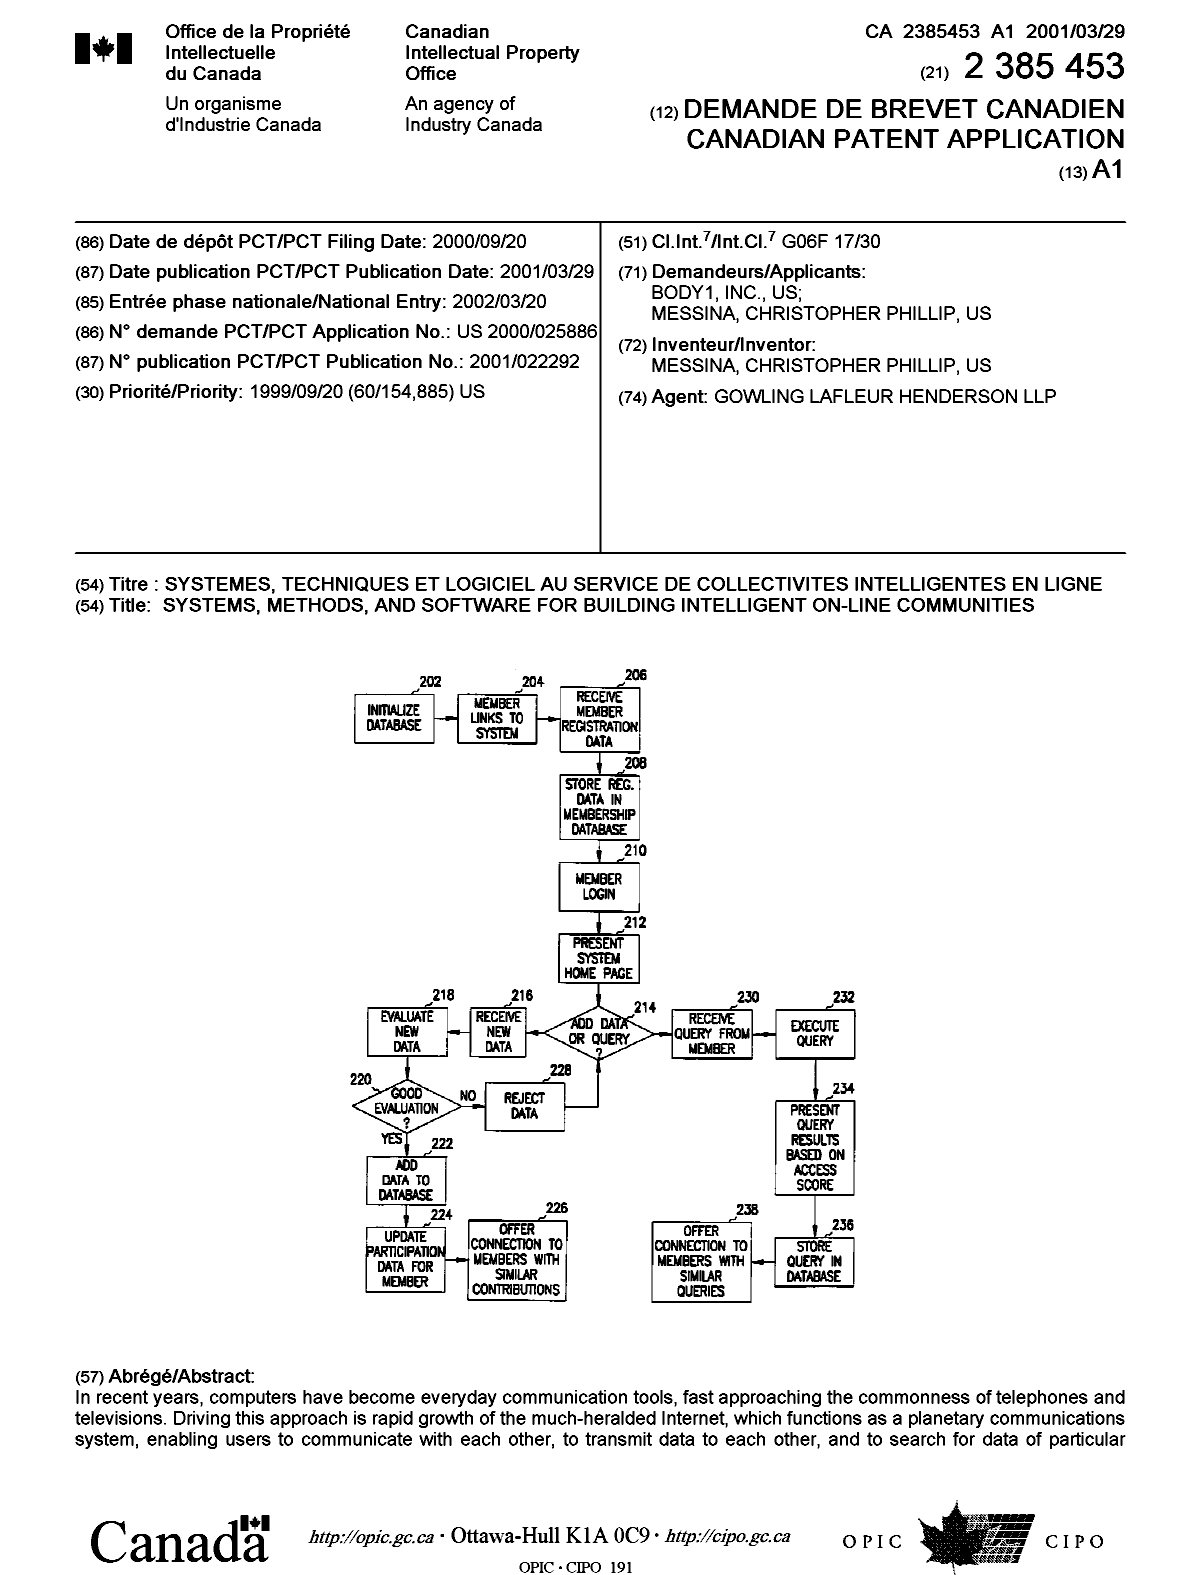 Document de brevet canadien 2385453. Page couverture 20020913. Image 1 de 2